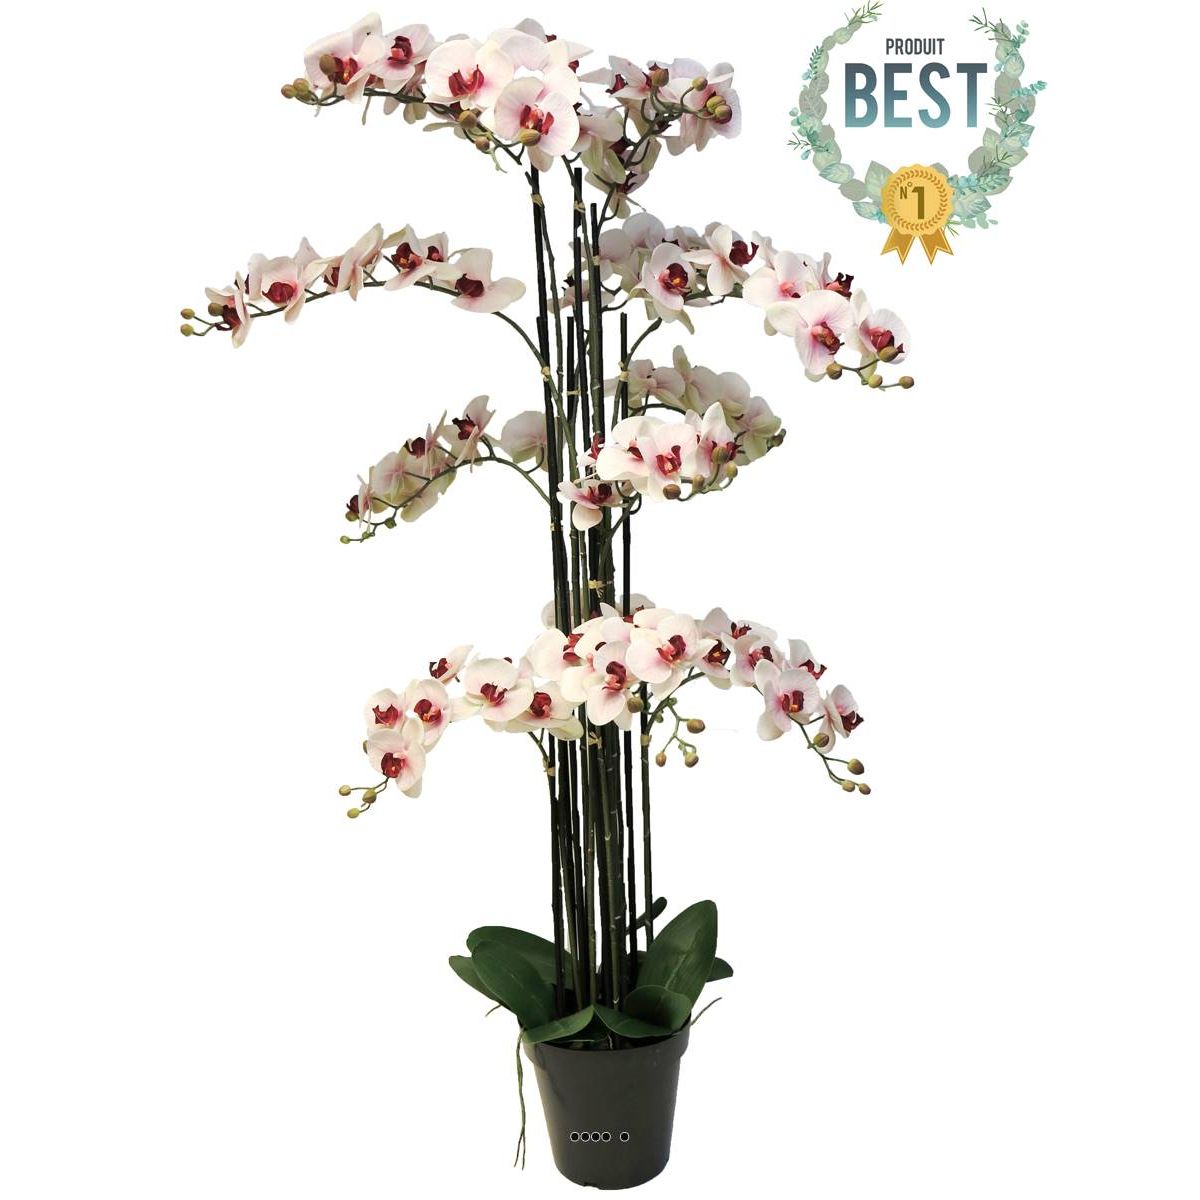 orchidee phalaenopsis factice top qualite & pot h140cm rose-pale-best - dimhaut: h 140 cm couleur: rose-creme